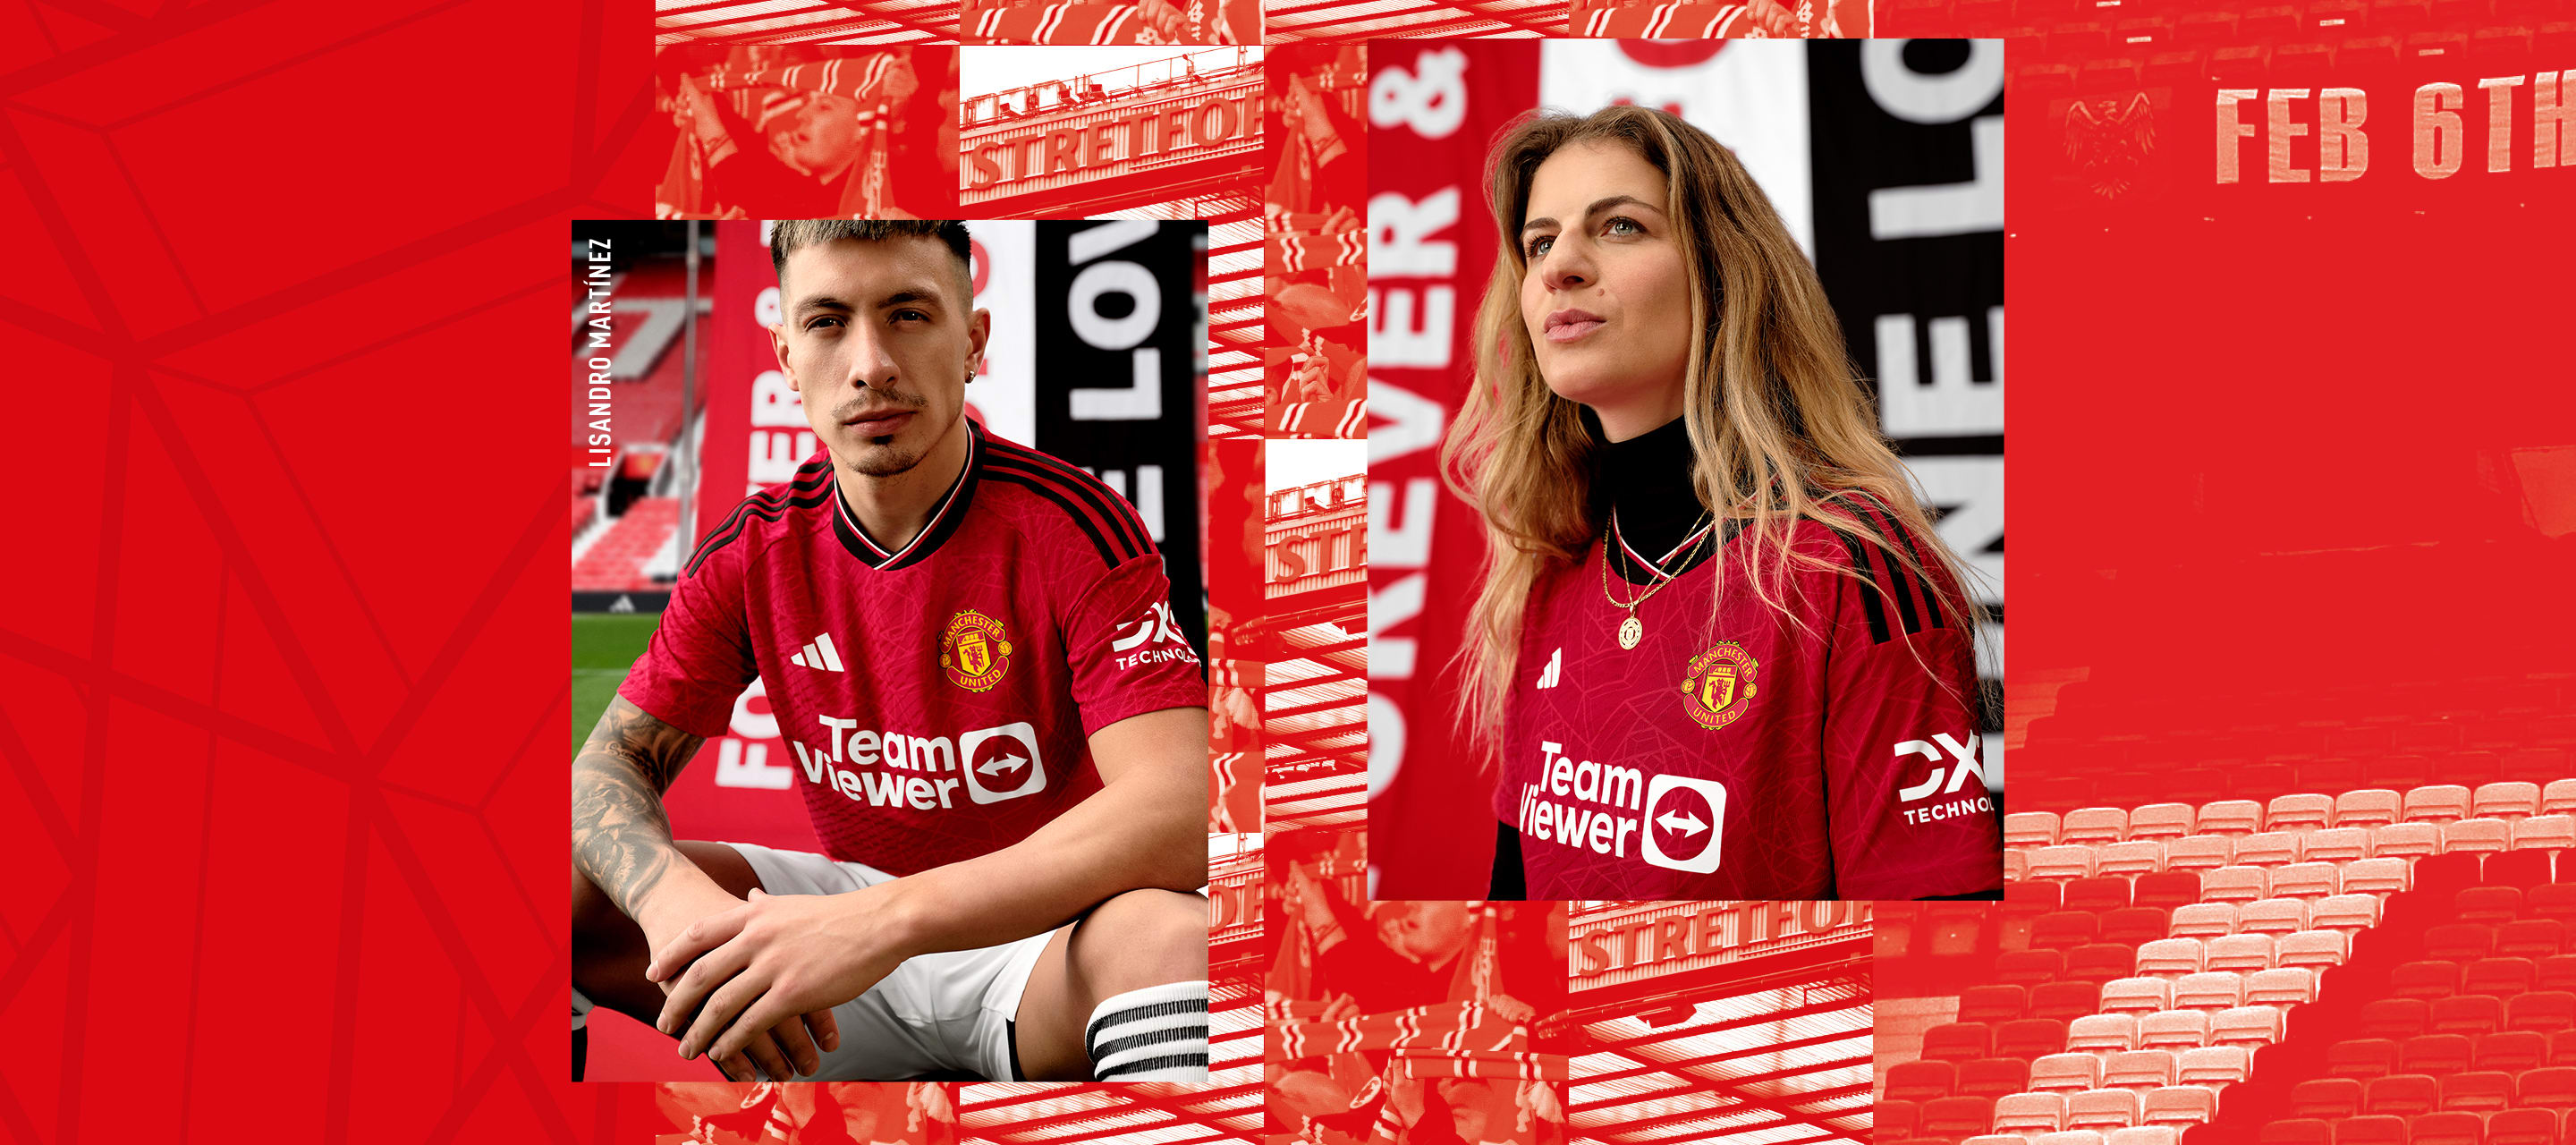 Composición visual de jugadores profesionales masculinos y femeninos con el nuevo uniforme de local del Manchester United 23/24